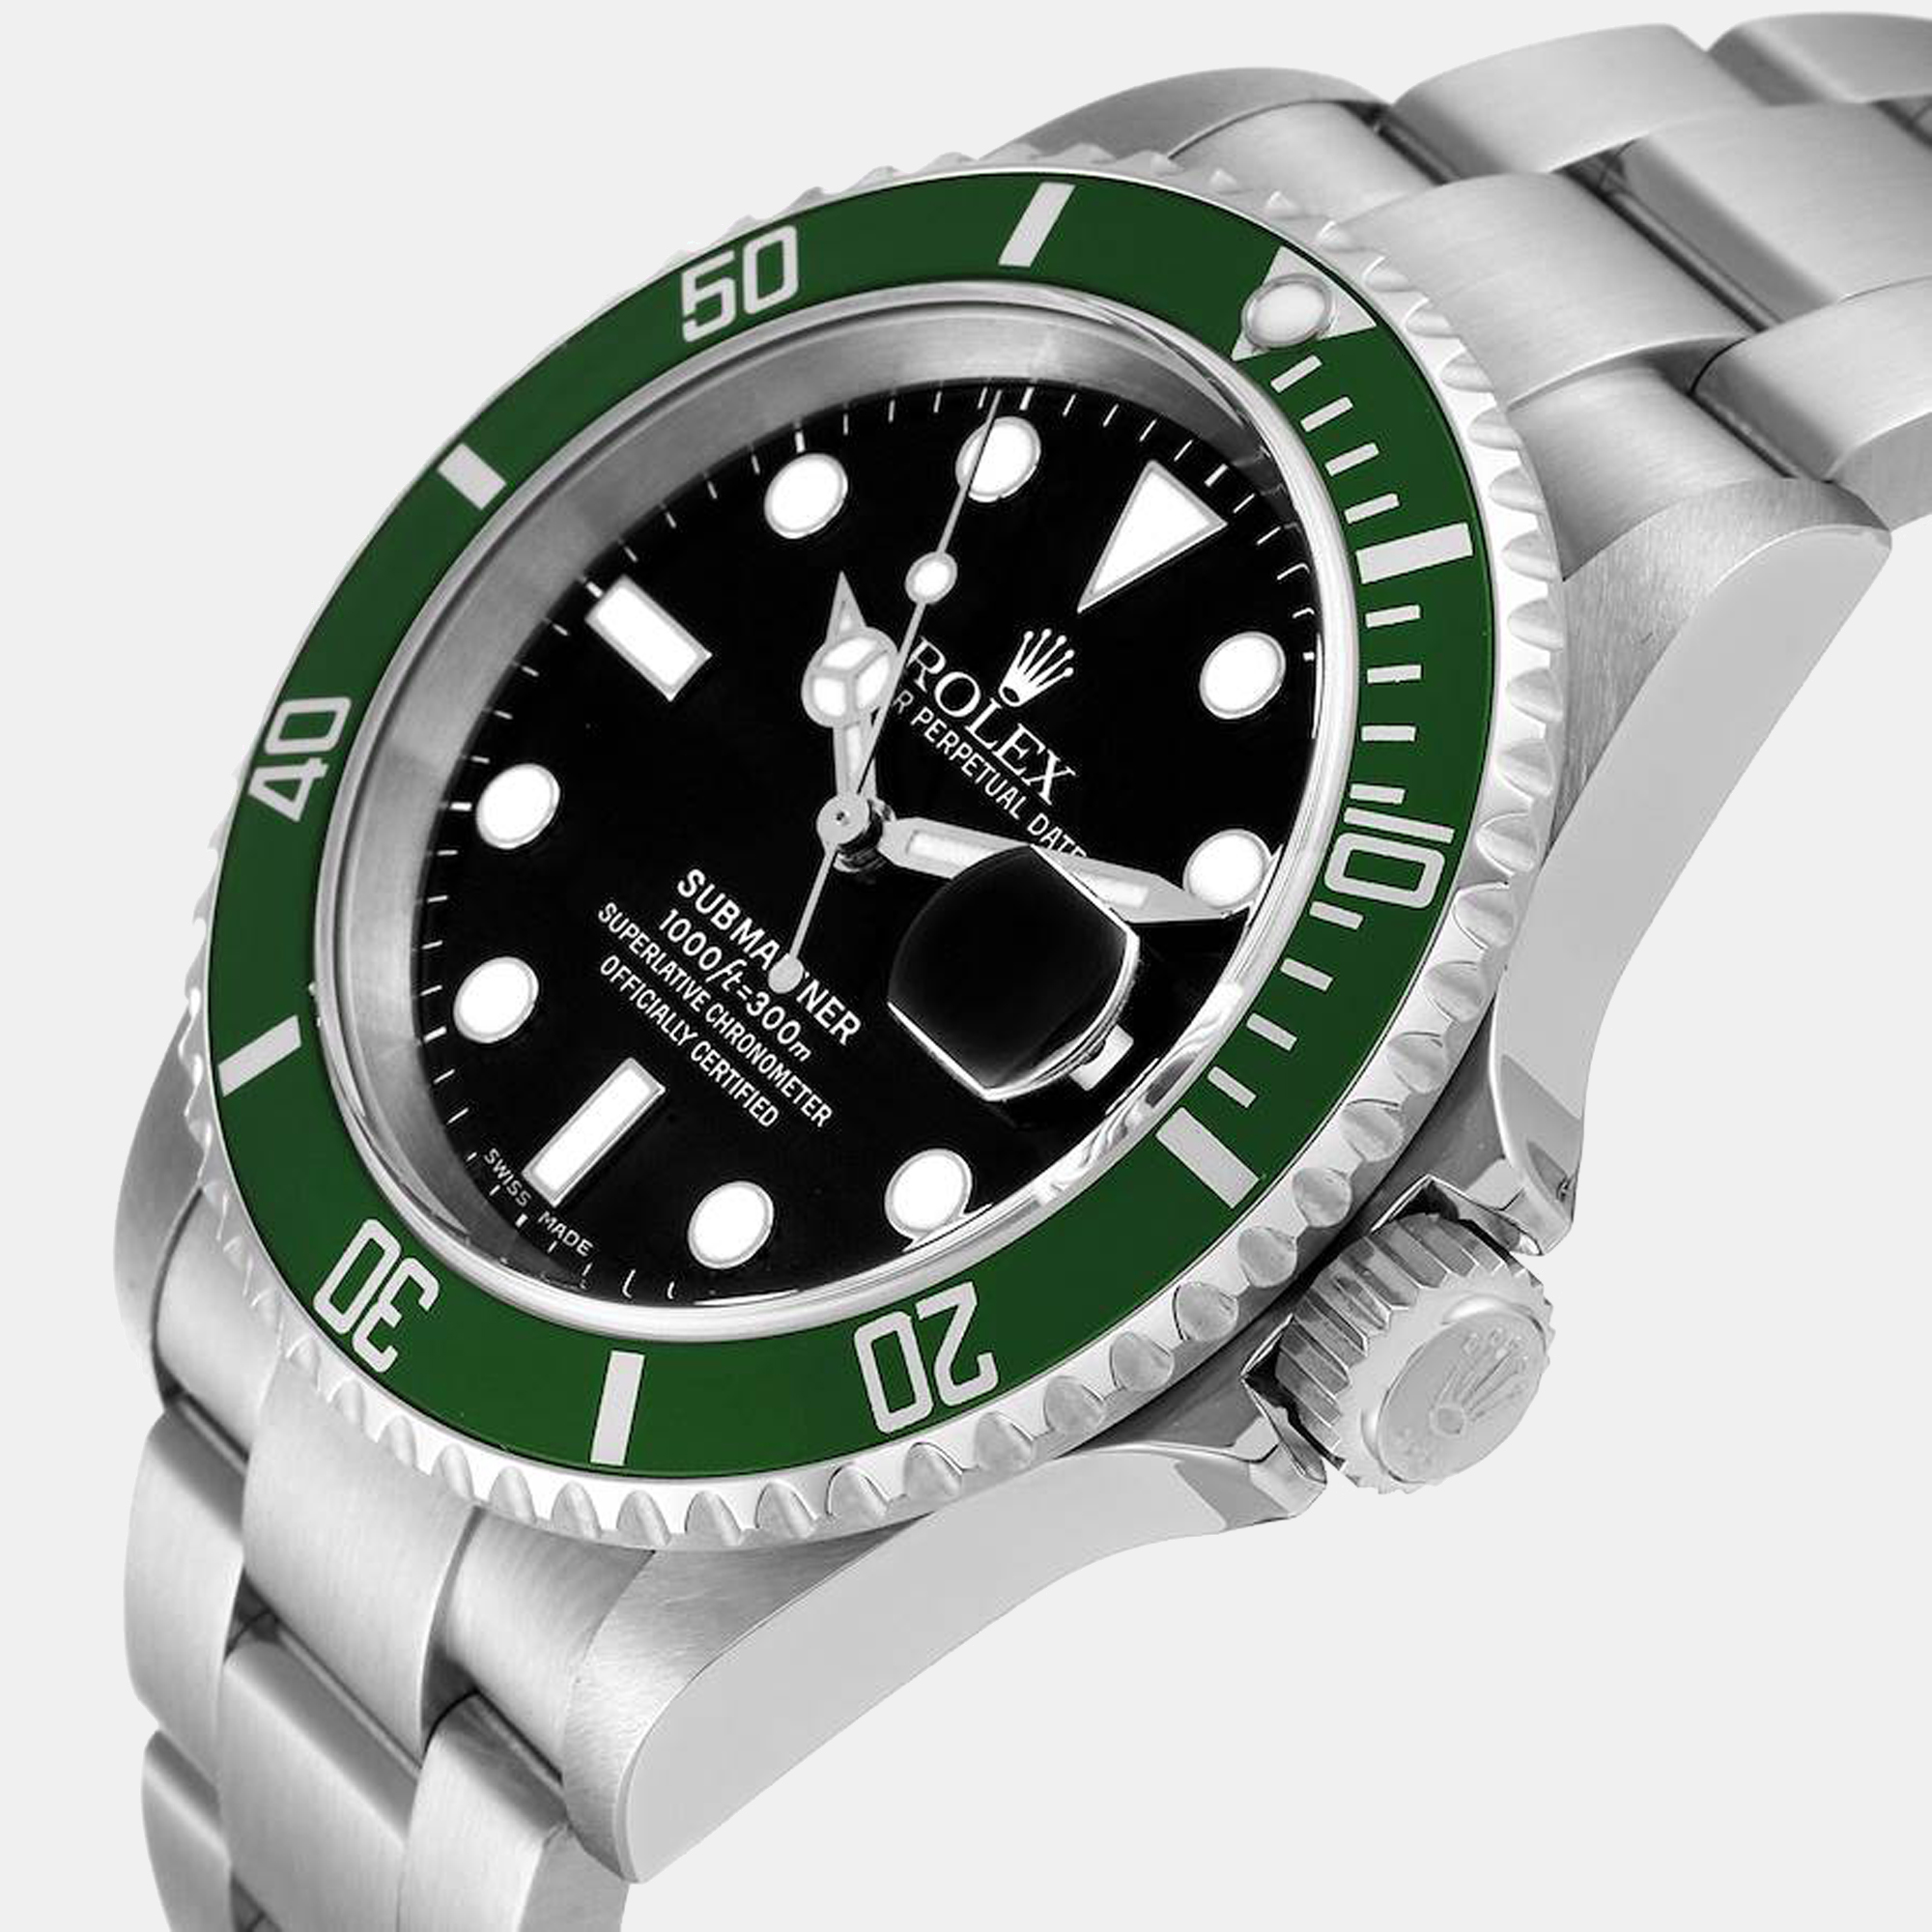 

Rolex Submariner Kermit Green 50th Anniversary Men's Watch 16610LV, Black